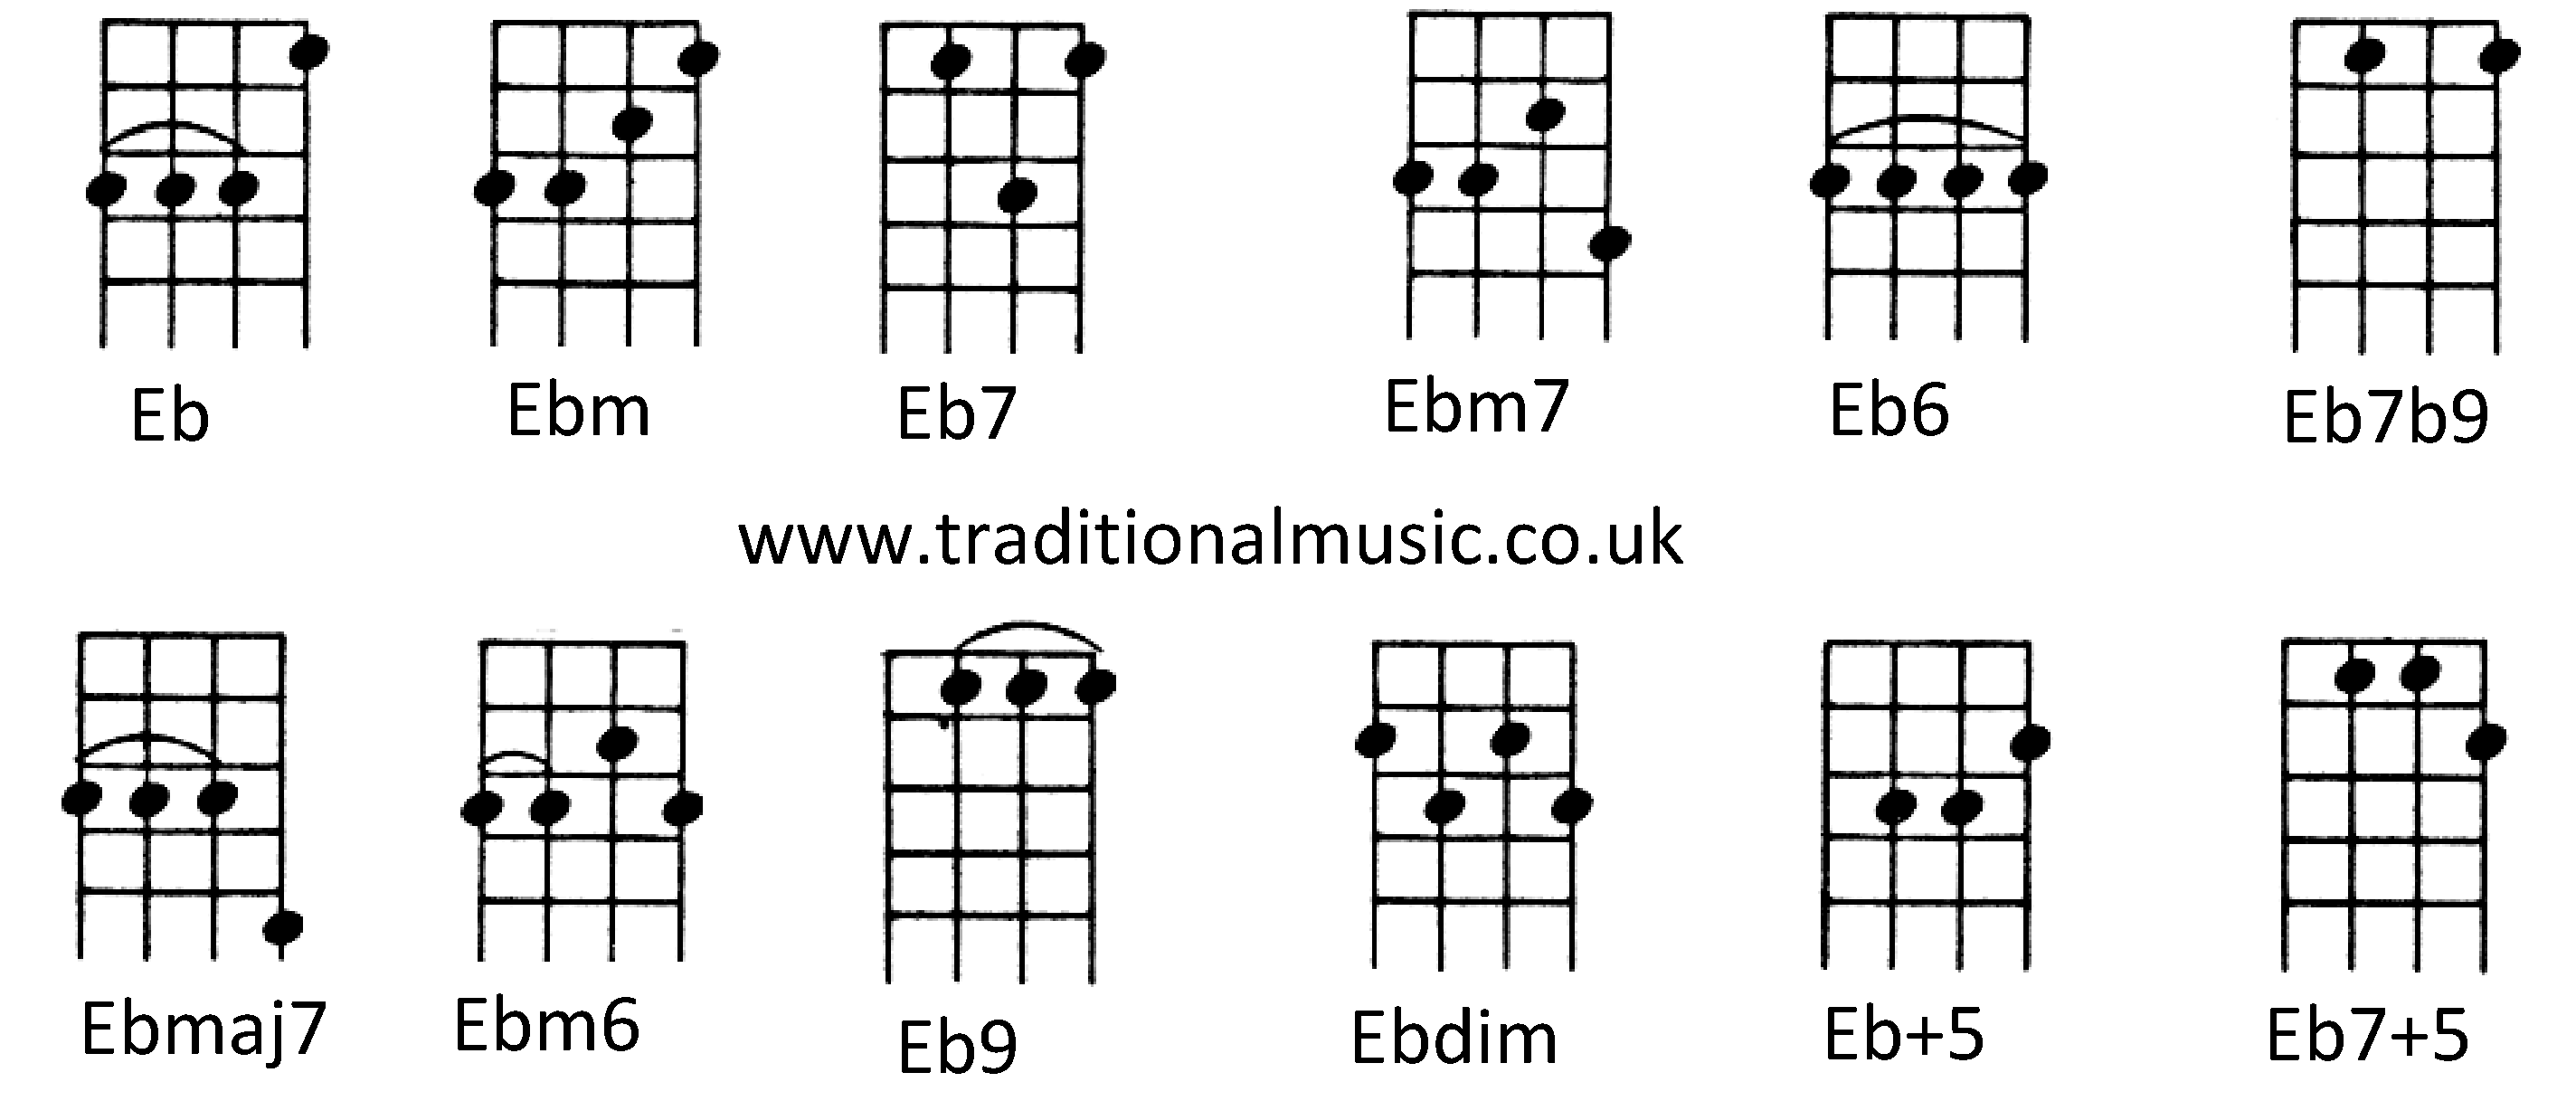 Chords for Ukulele (C tuning) Eb Ebm Eb7 Ebm7 Eb6 Eb7b9 Ebmaj7 Ebm6 Eb9 Ebdim Eb+5 Eb7+5